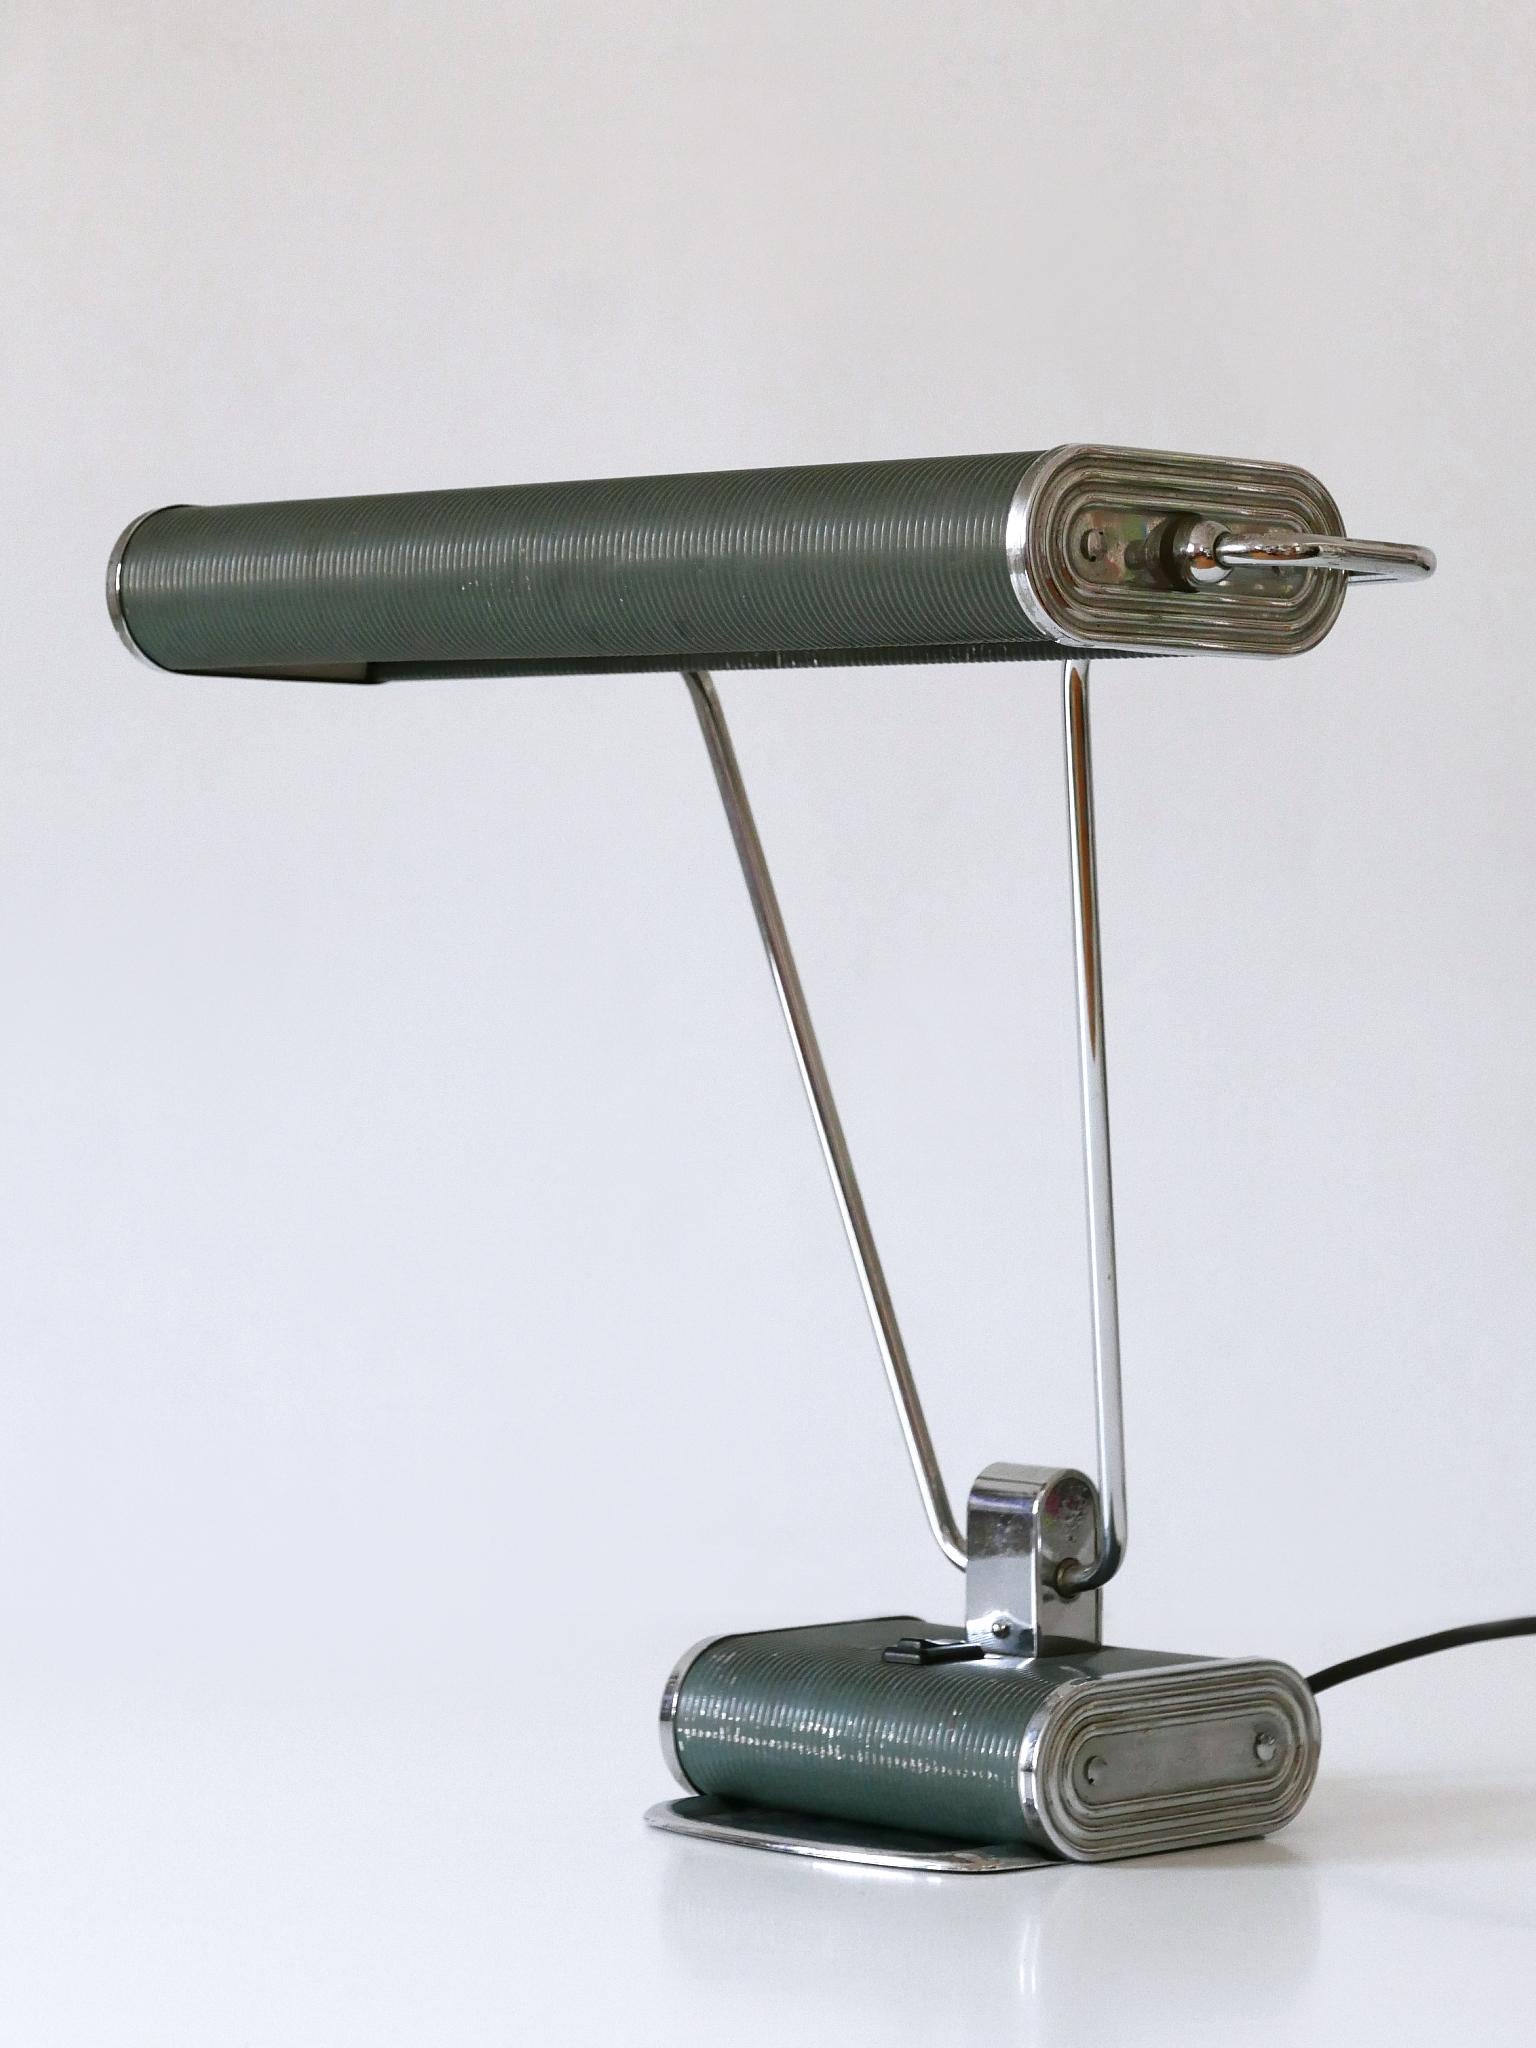 Elegante lampe de table ou de bureau Art Deco 'No 71' de couleur bleu-gris et argent. Abat-jour rotatif. Conçu par André Mounique pour Jumo, France, années 1930.

Un total de 5 lampes en deux couleurs est disponible !
Il s'agit du numéro 5 des cinq